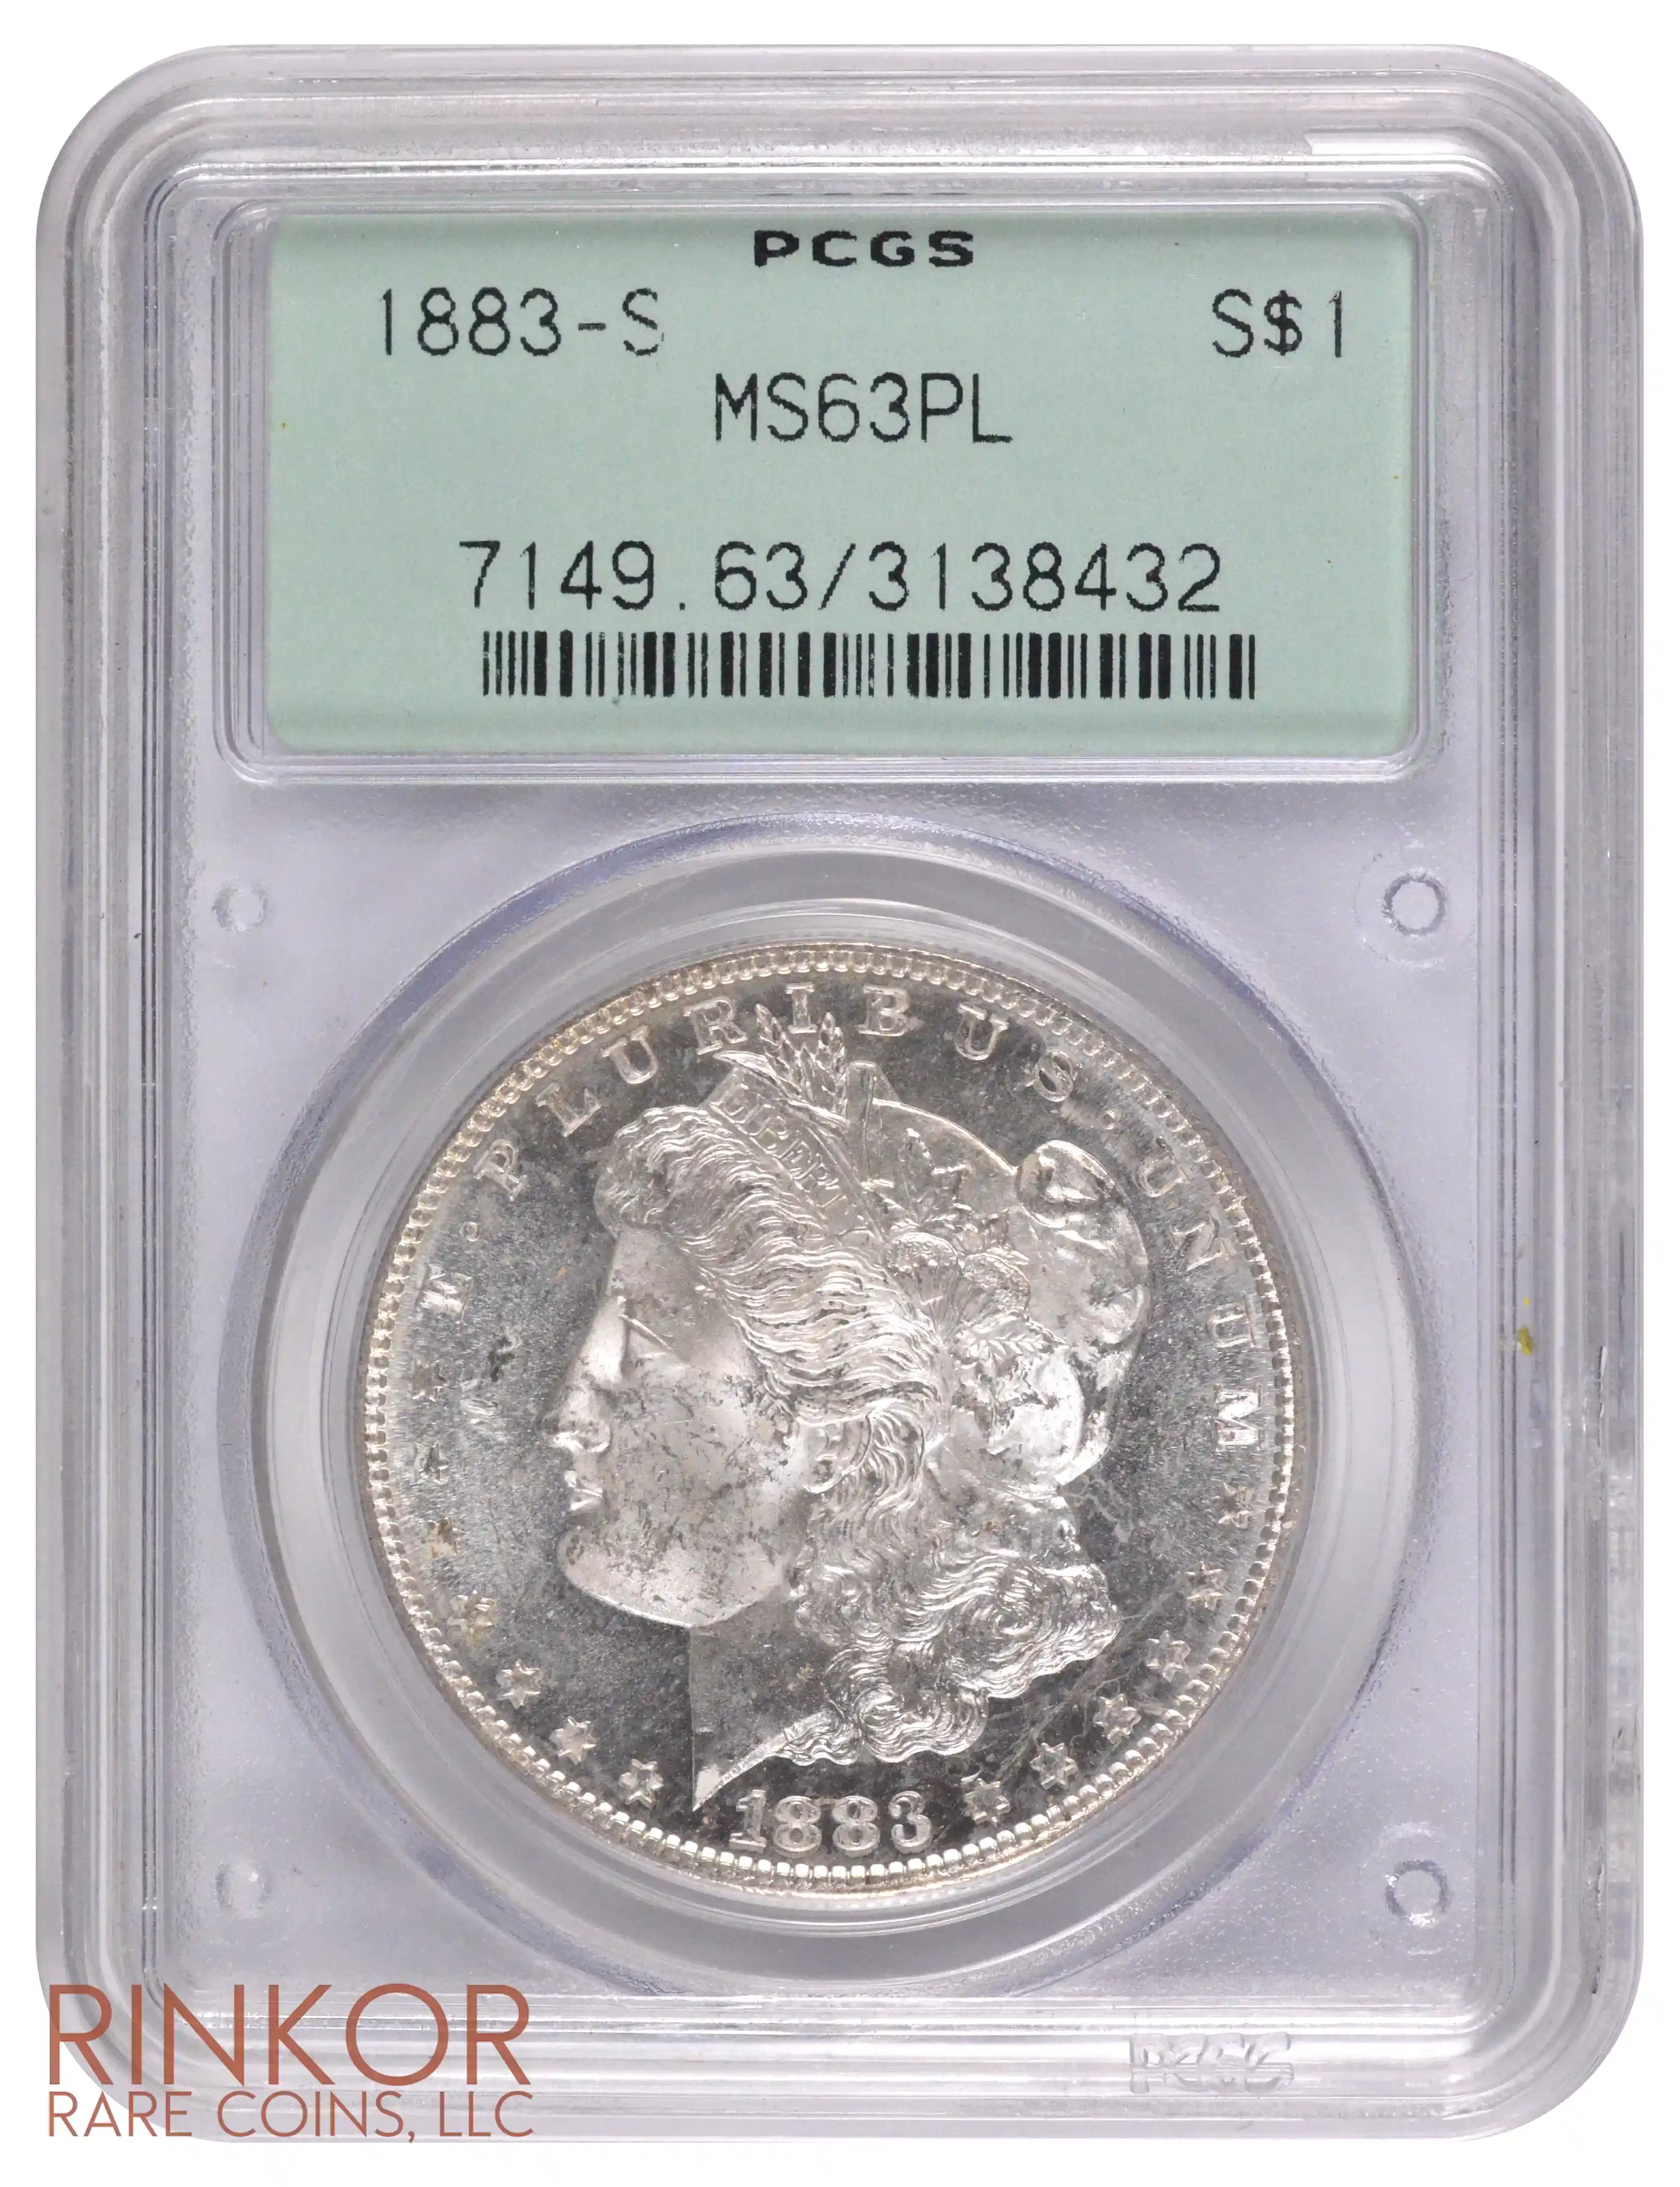 1883-S $1 PCGS MS 63 PL